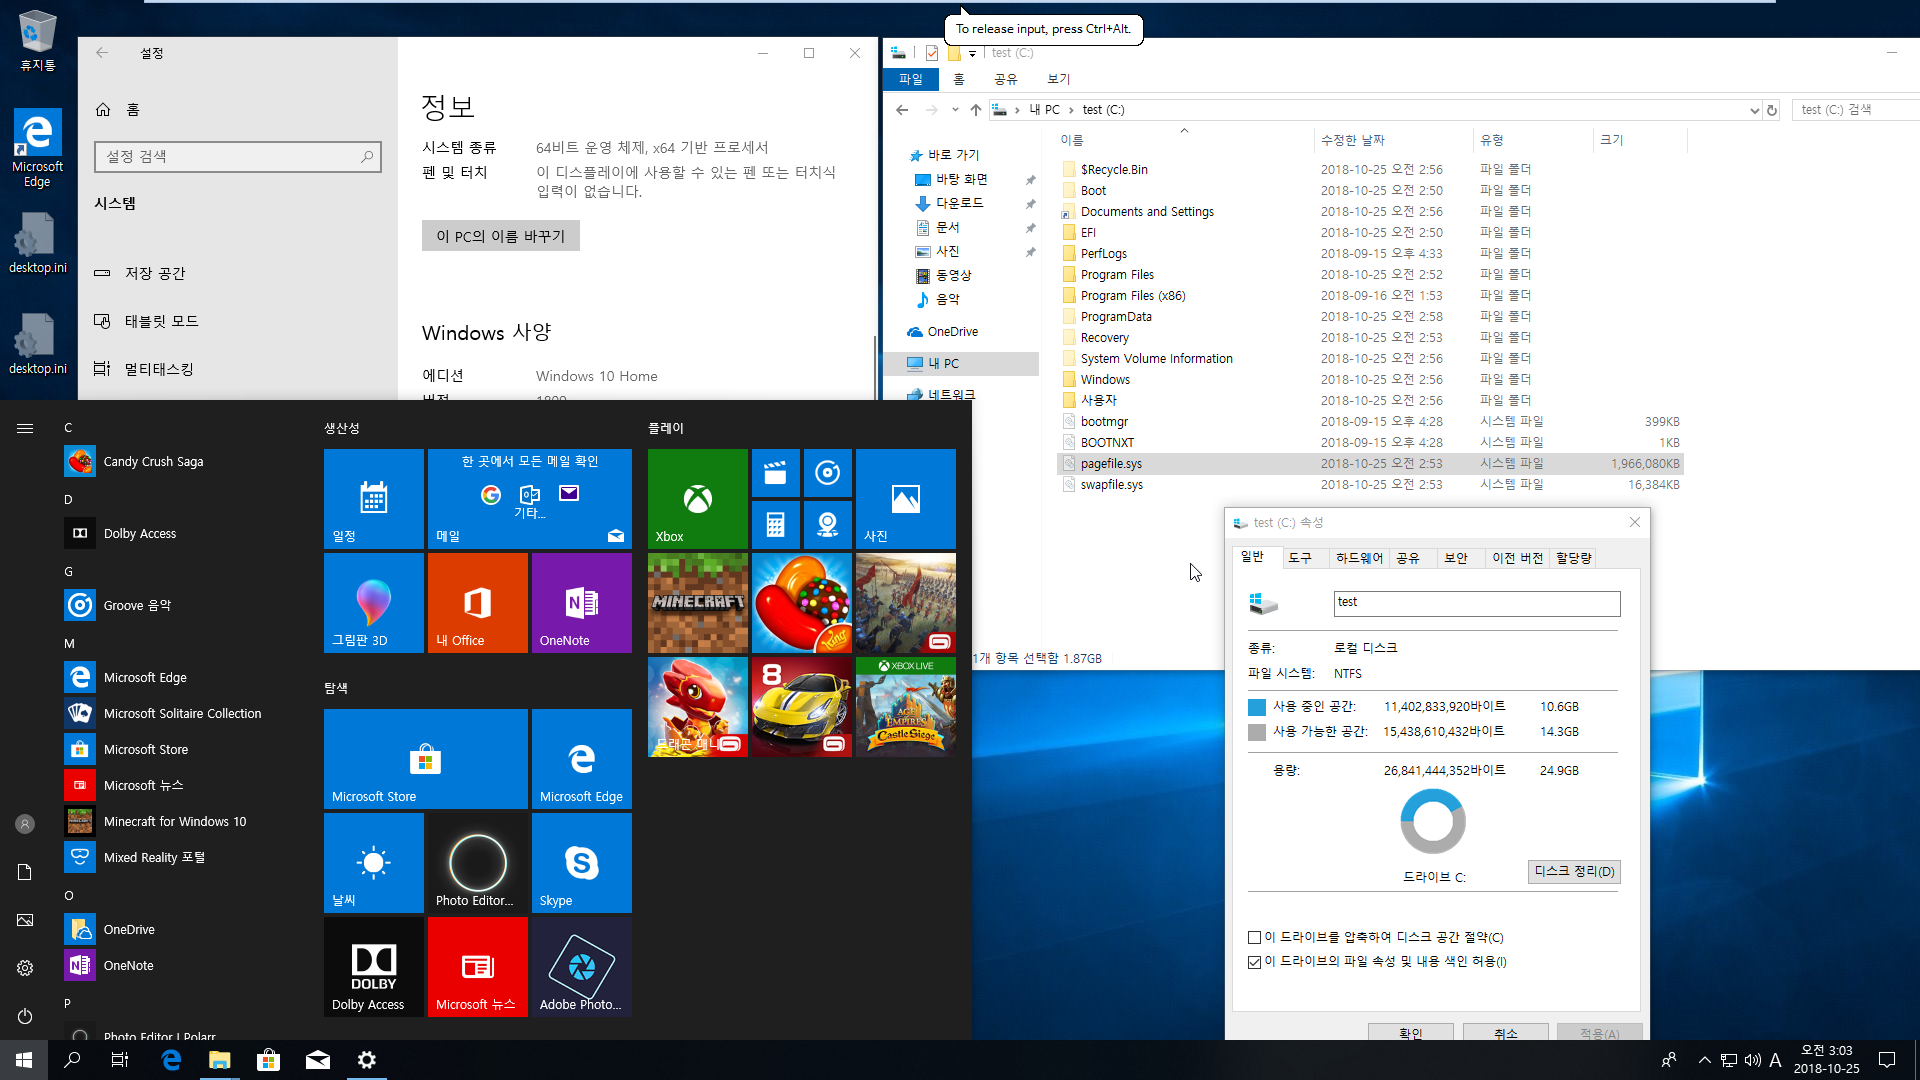 Windows 10 버전 1809 RS5 [레드스톤5] 이미지 크기 비교 - 64비트 - Home 설치 테스트 - 순수한 윈도 용량은 8.7GB 정도 되네요 2018-10-25_030340.png